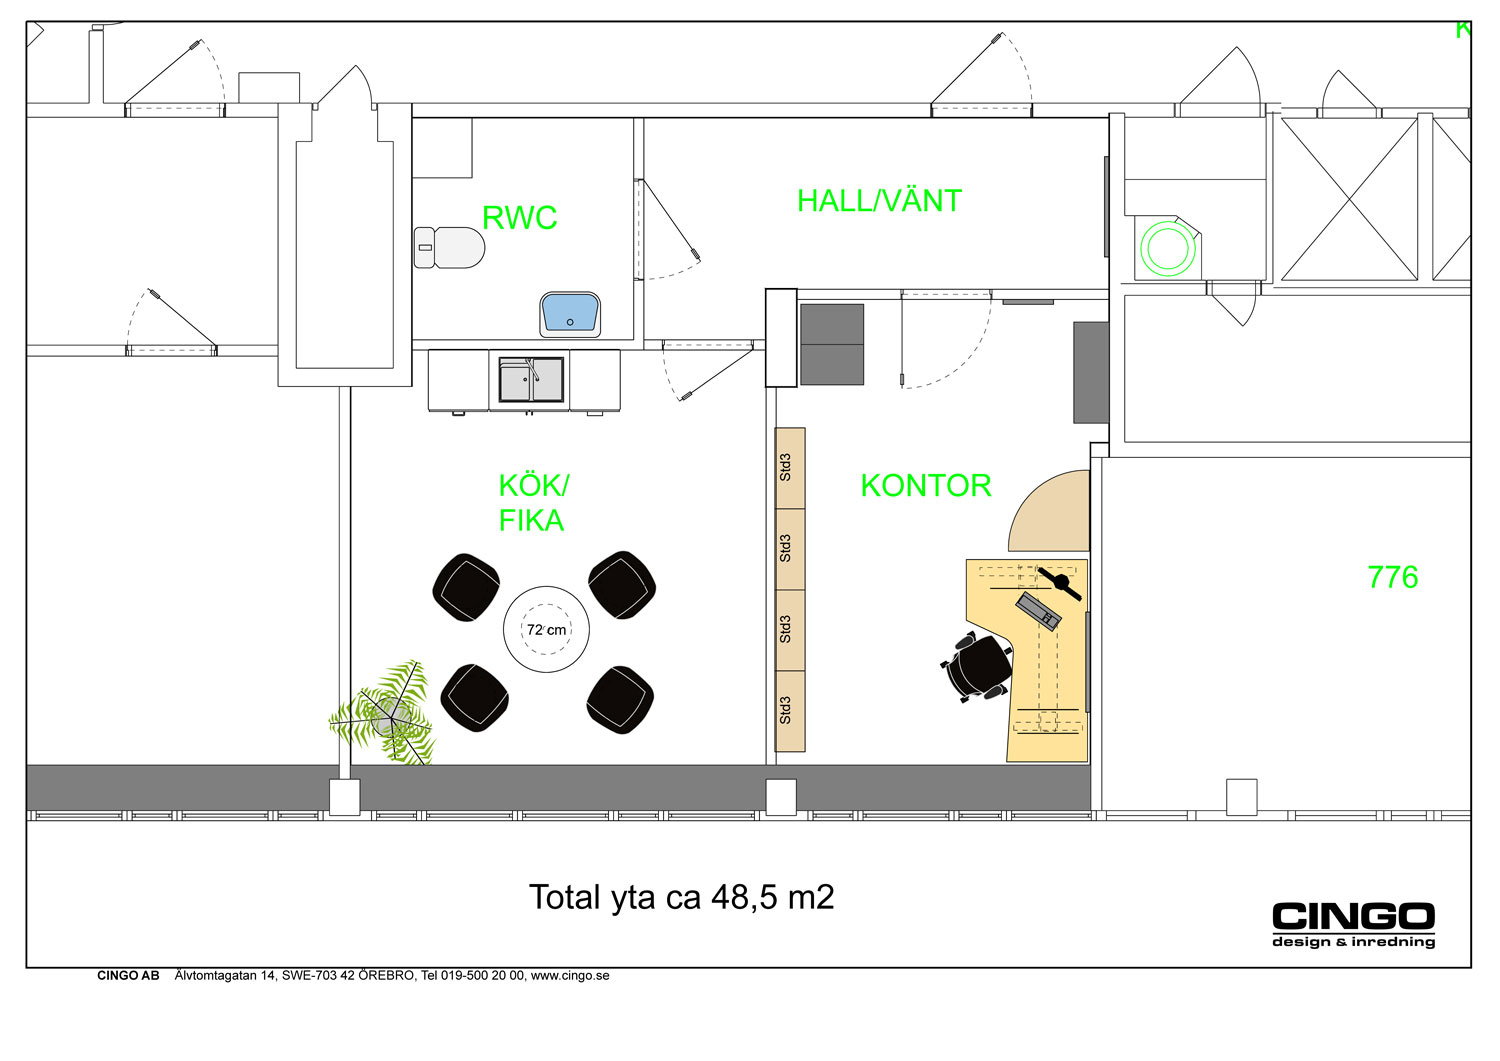 Planskiss med två rum, pentry, hall och RWC.